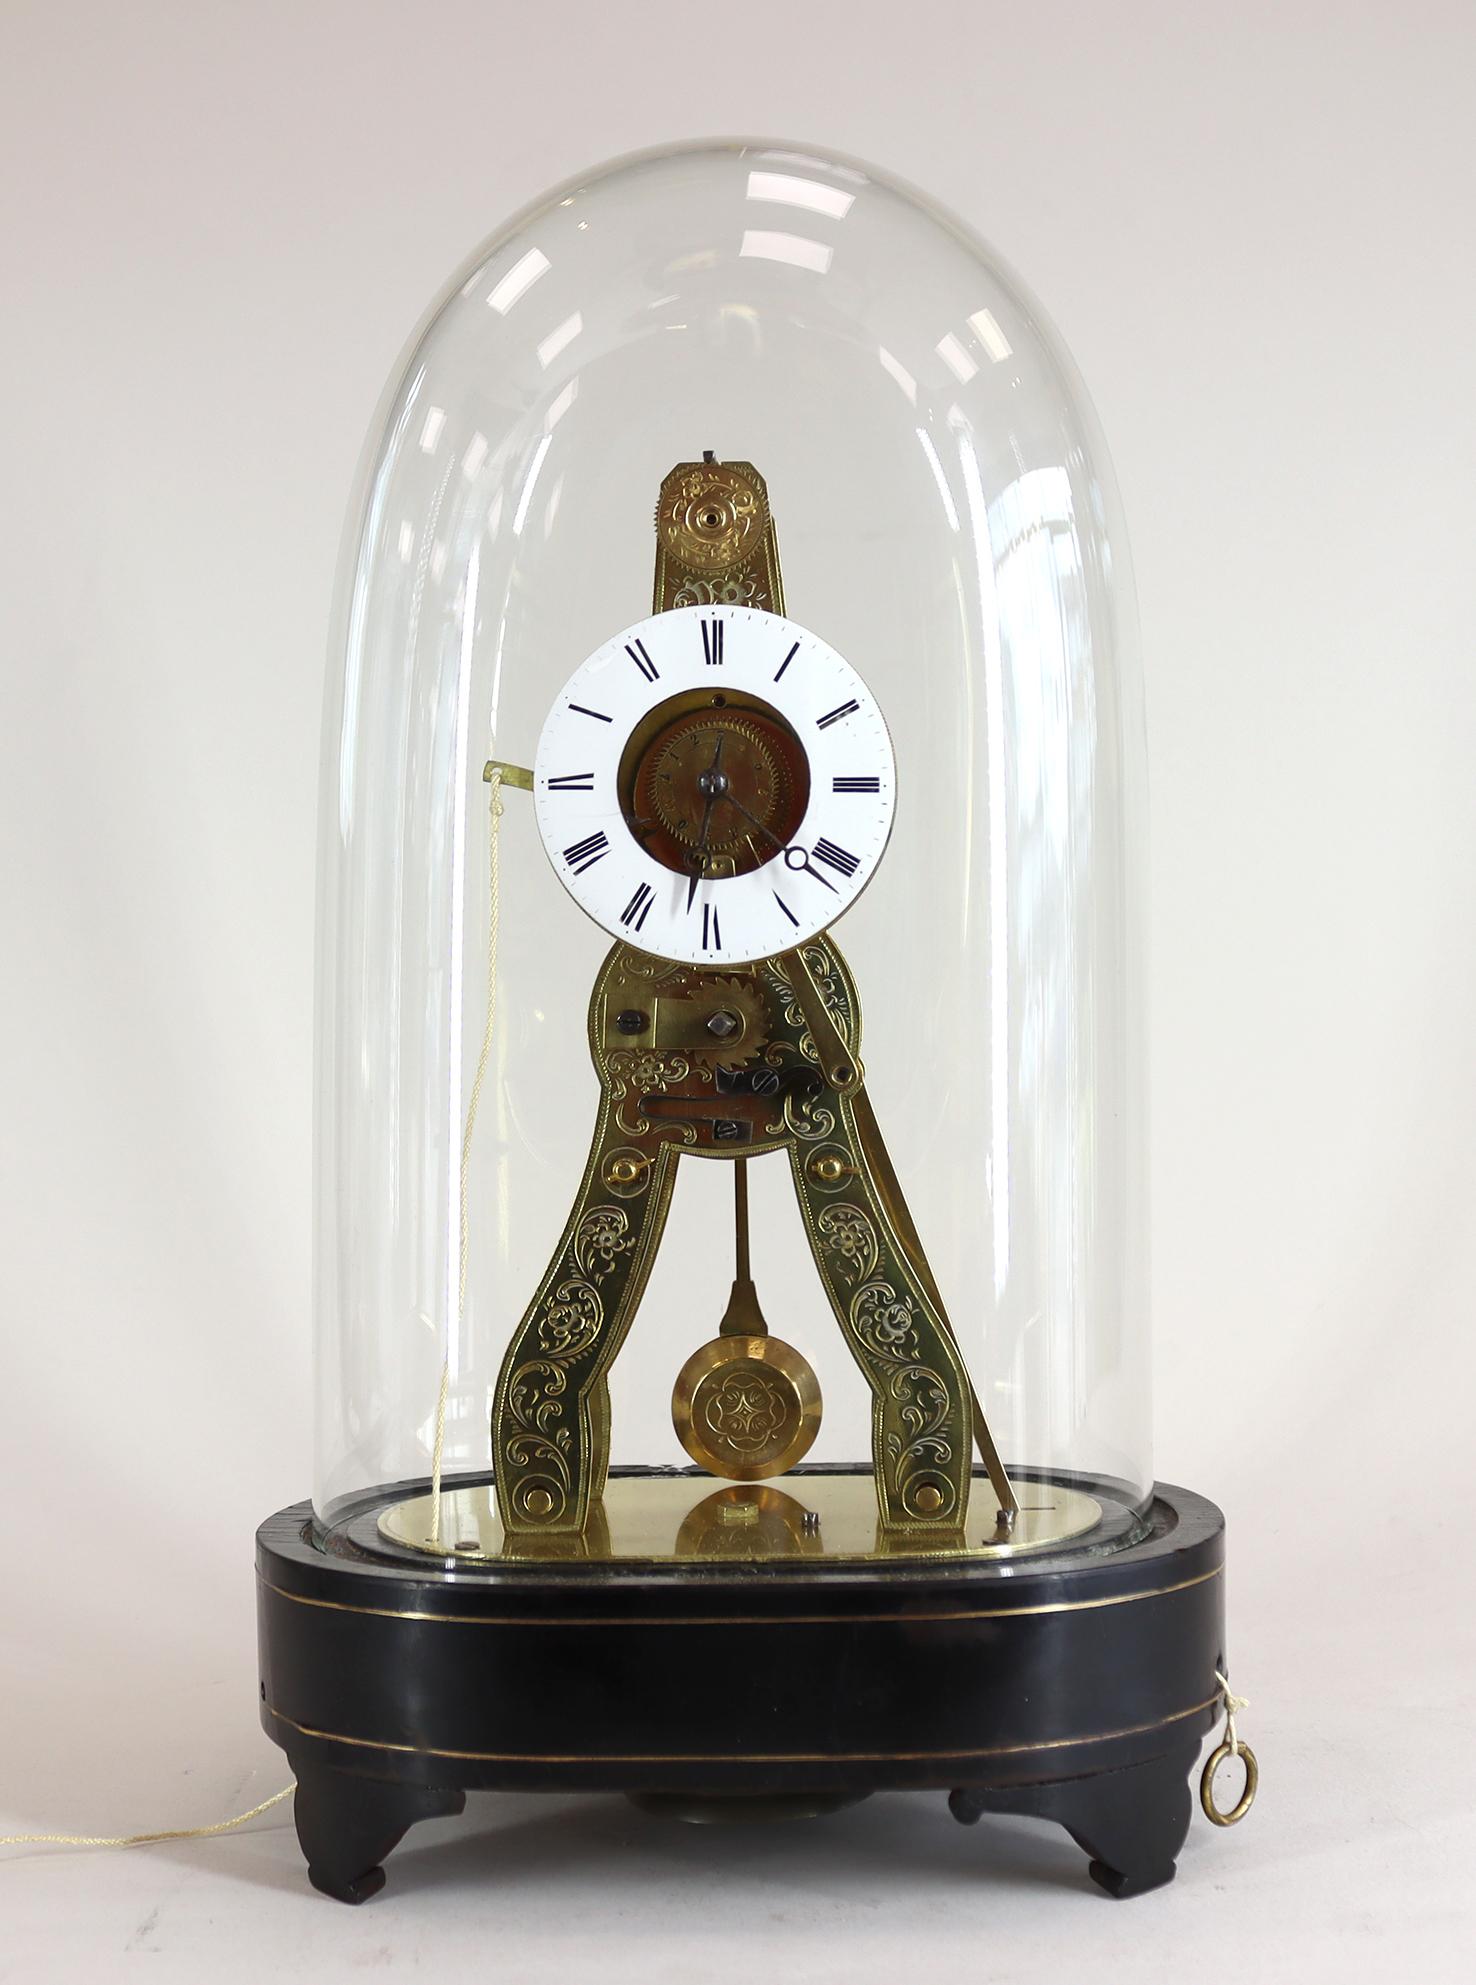 Réveil squelette miniature français avec suspension en soie datant du milieu du 19ème siècle, avec dôme en verre d'origine sur une base ébonisée et incrustée de laiton avec cadran émaillé, et cadran de réveil argenté, sonnant sur une très belle